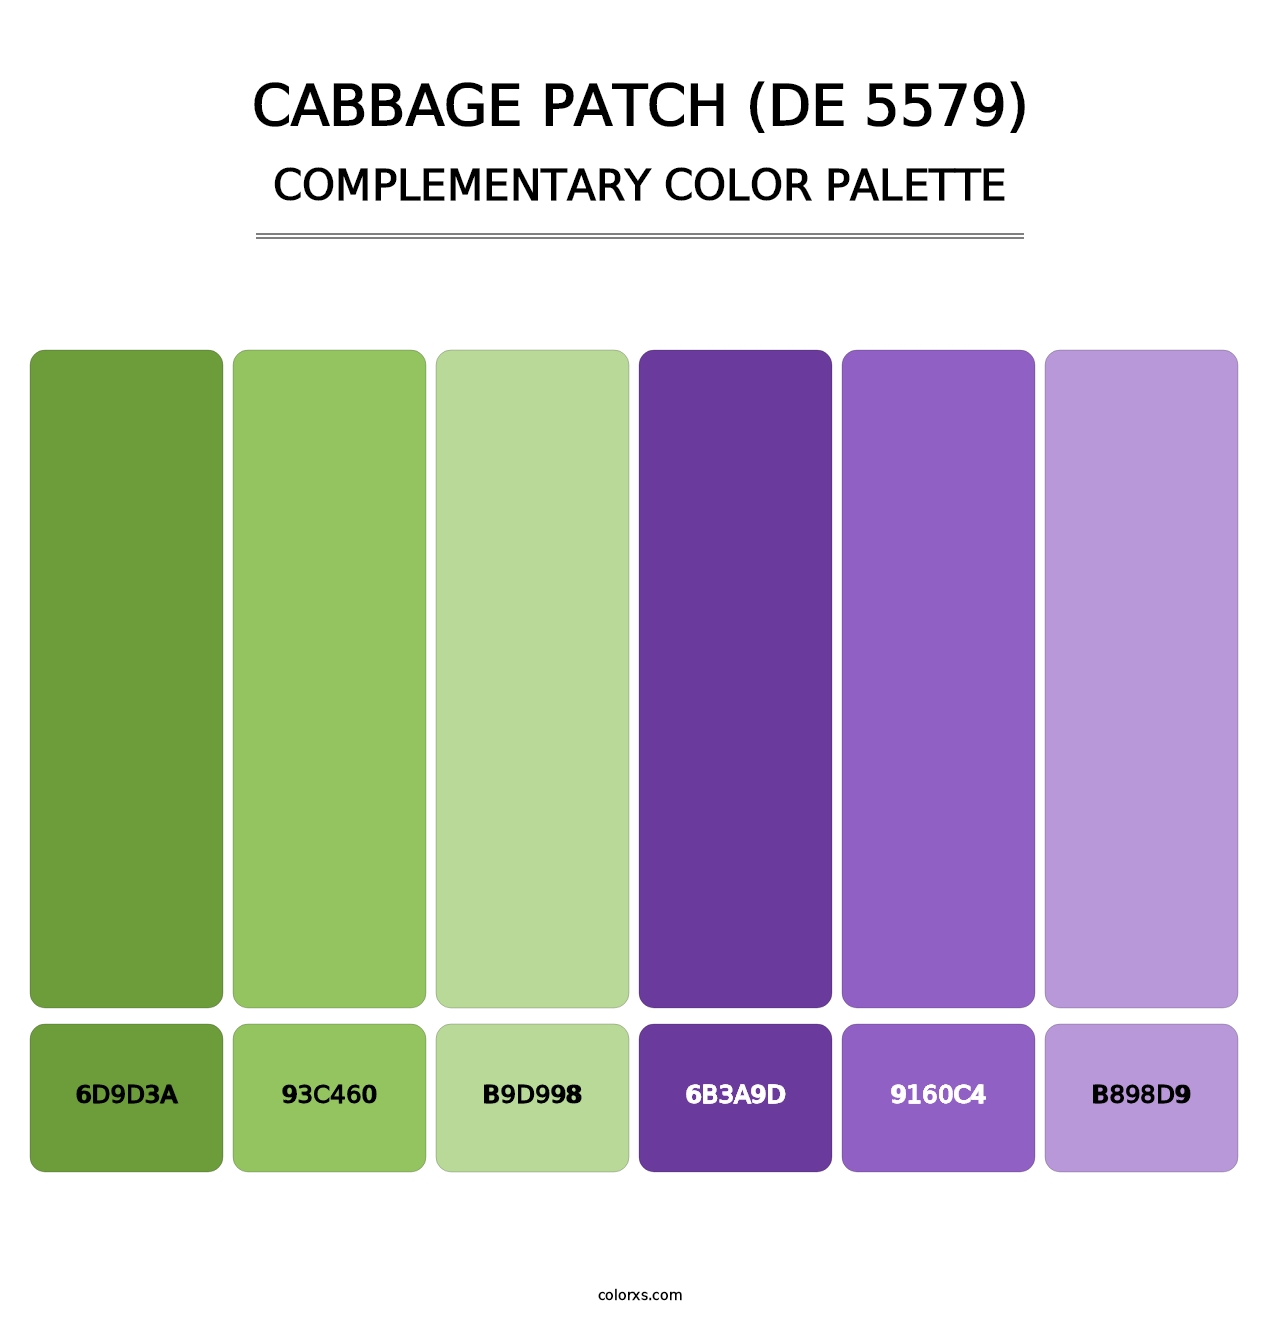 Cabbage Patch (DE 5579) - Complementary Color Palette